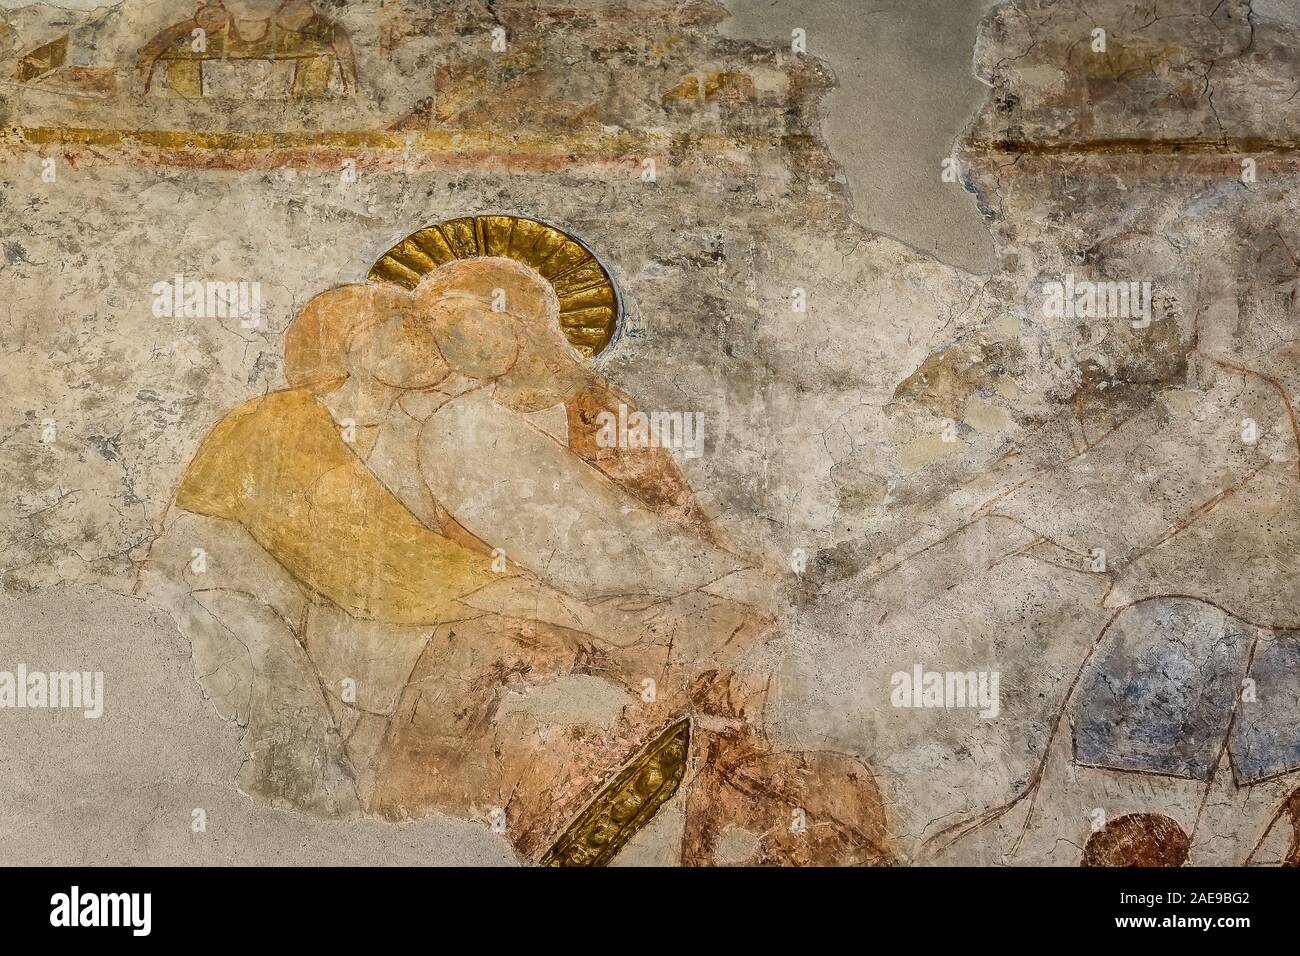 La trahison du Christ ou le baiser de Judas dans le jardin de Gethsémani, une peinture murale romane dans l'église, au Danemark, Malov Janvier 23, 2018 Banque D'Images